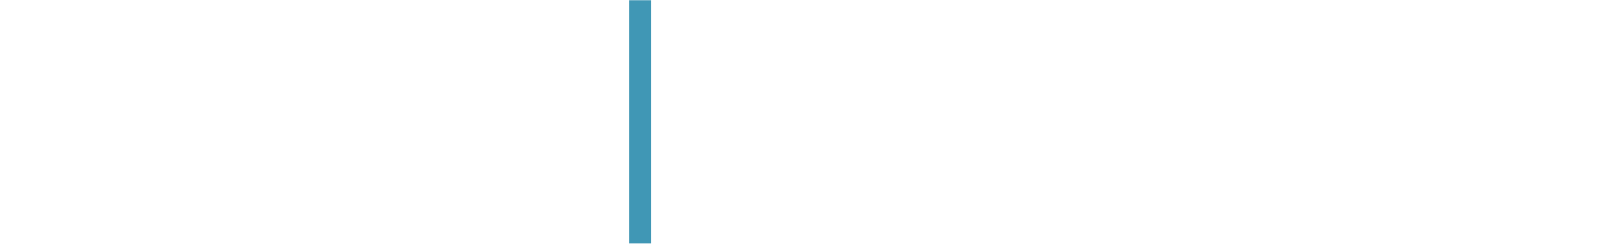 Piper Sandler
 logo large for dark backgrounds (transparent PNG)